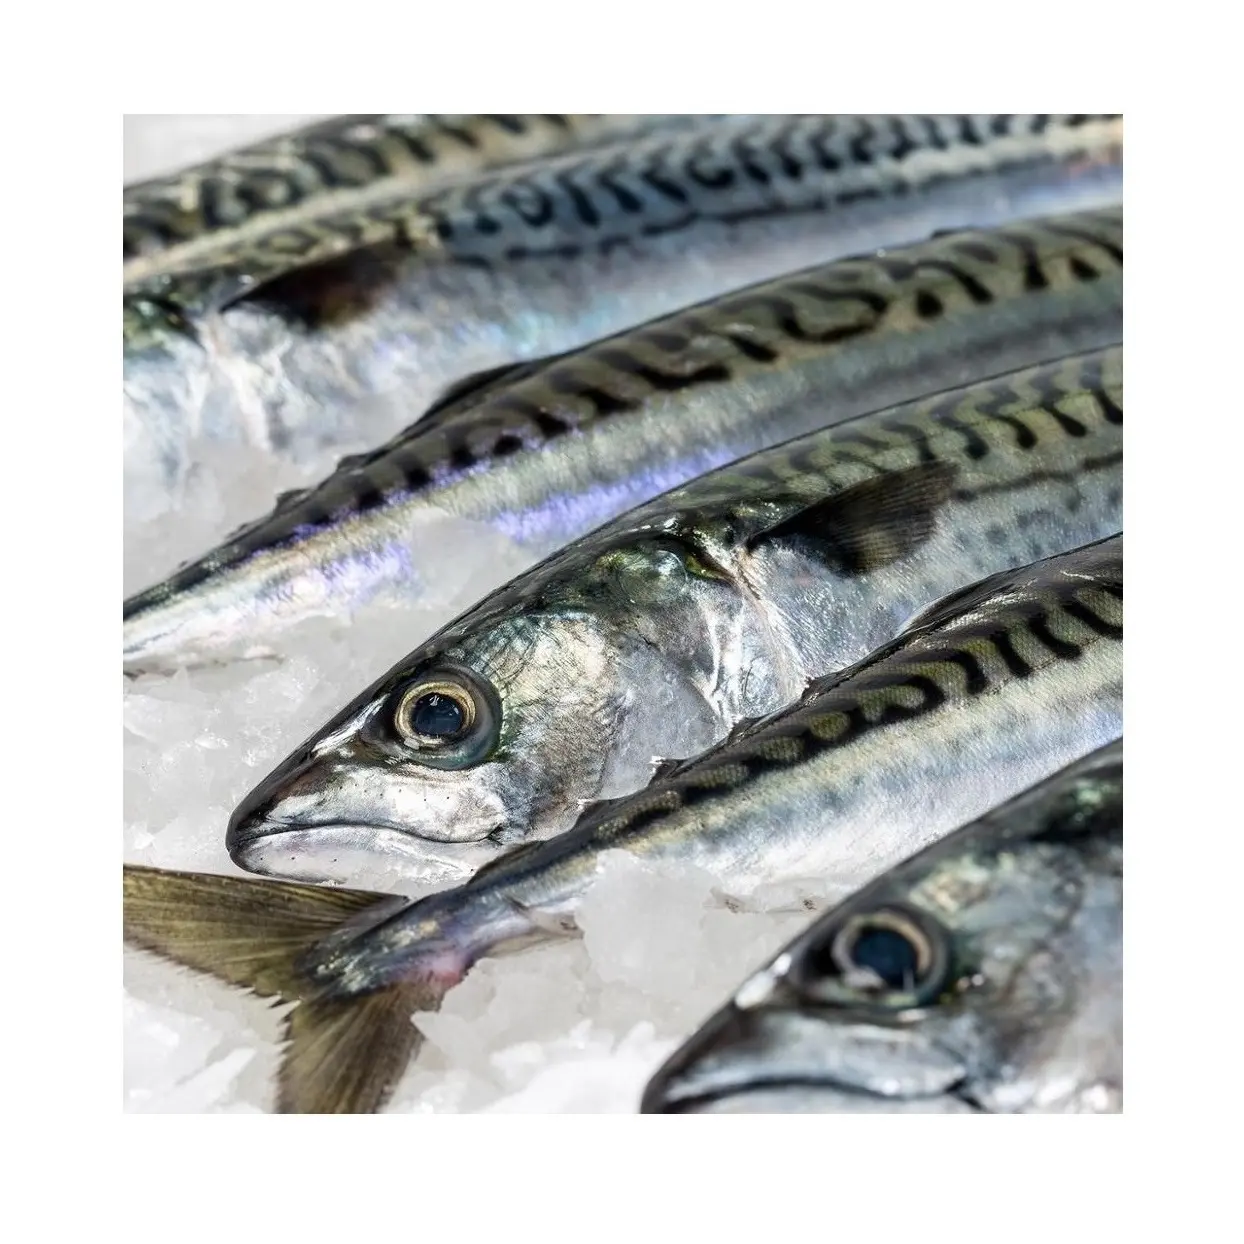 En ucuz fiyat taze uskumru balık, restoran için burada satış için kullanılabilir